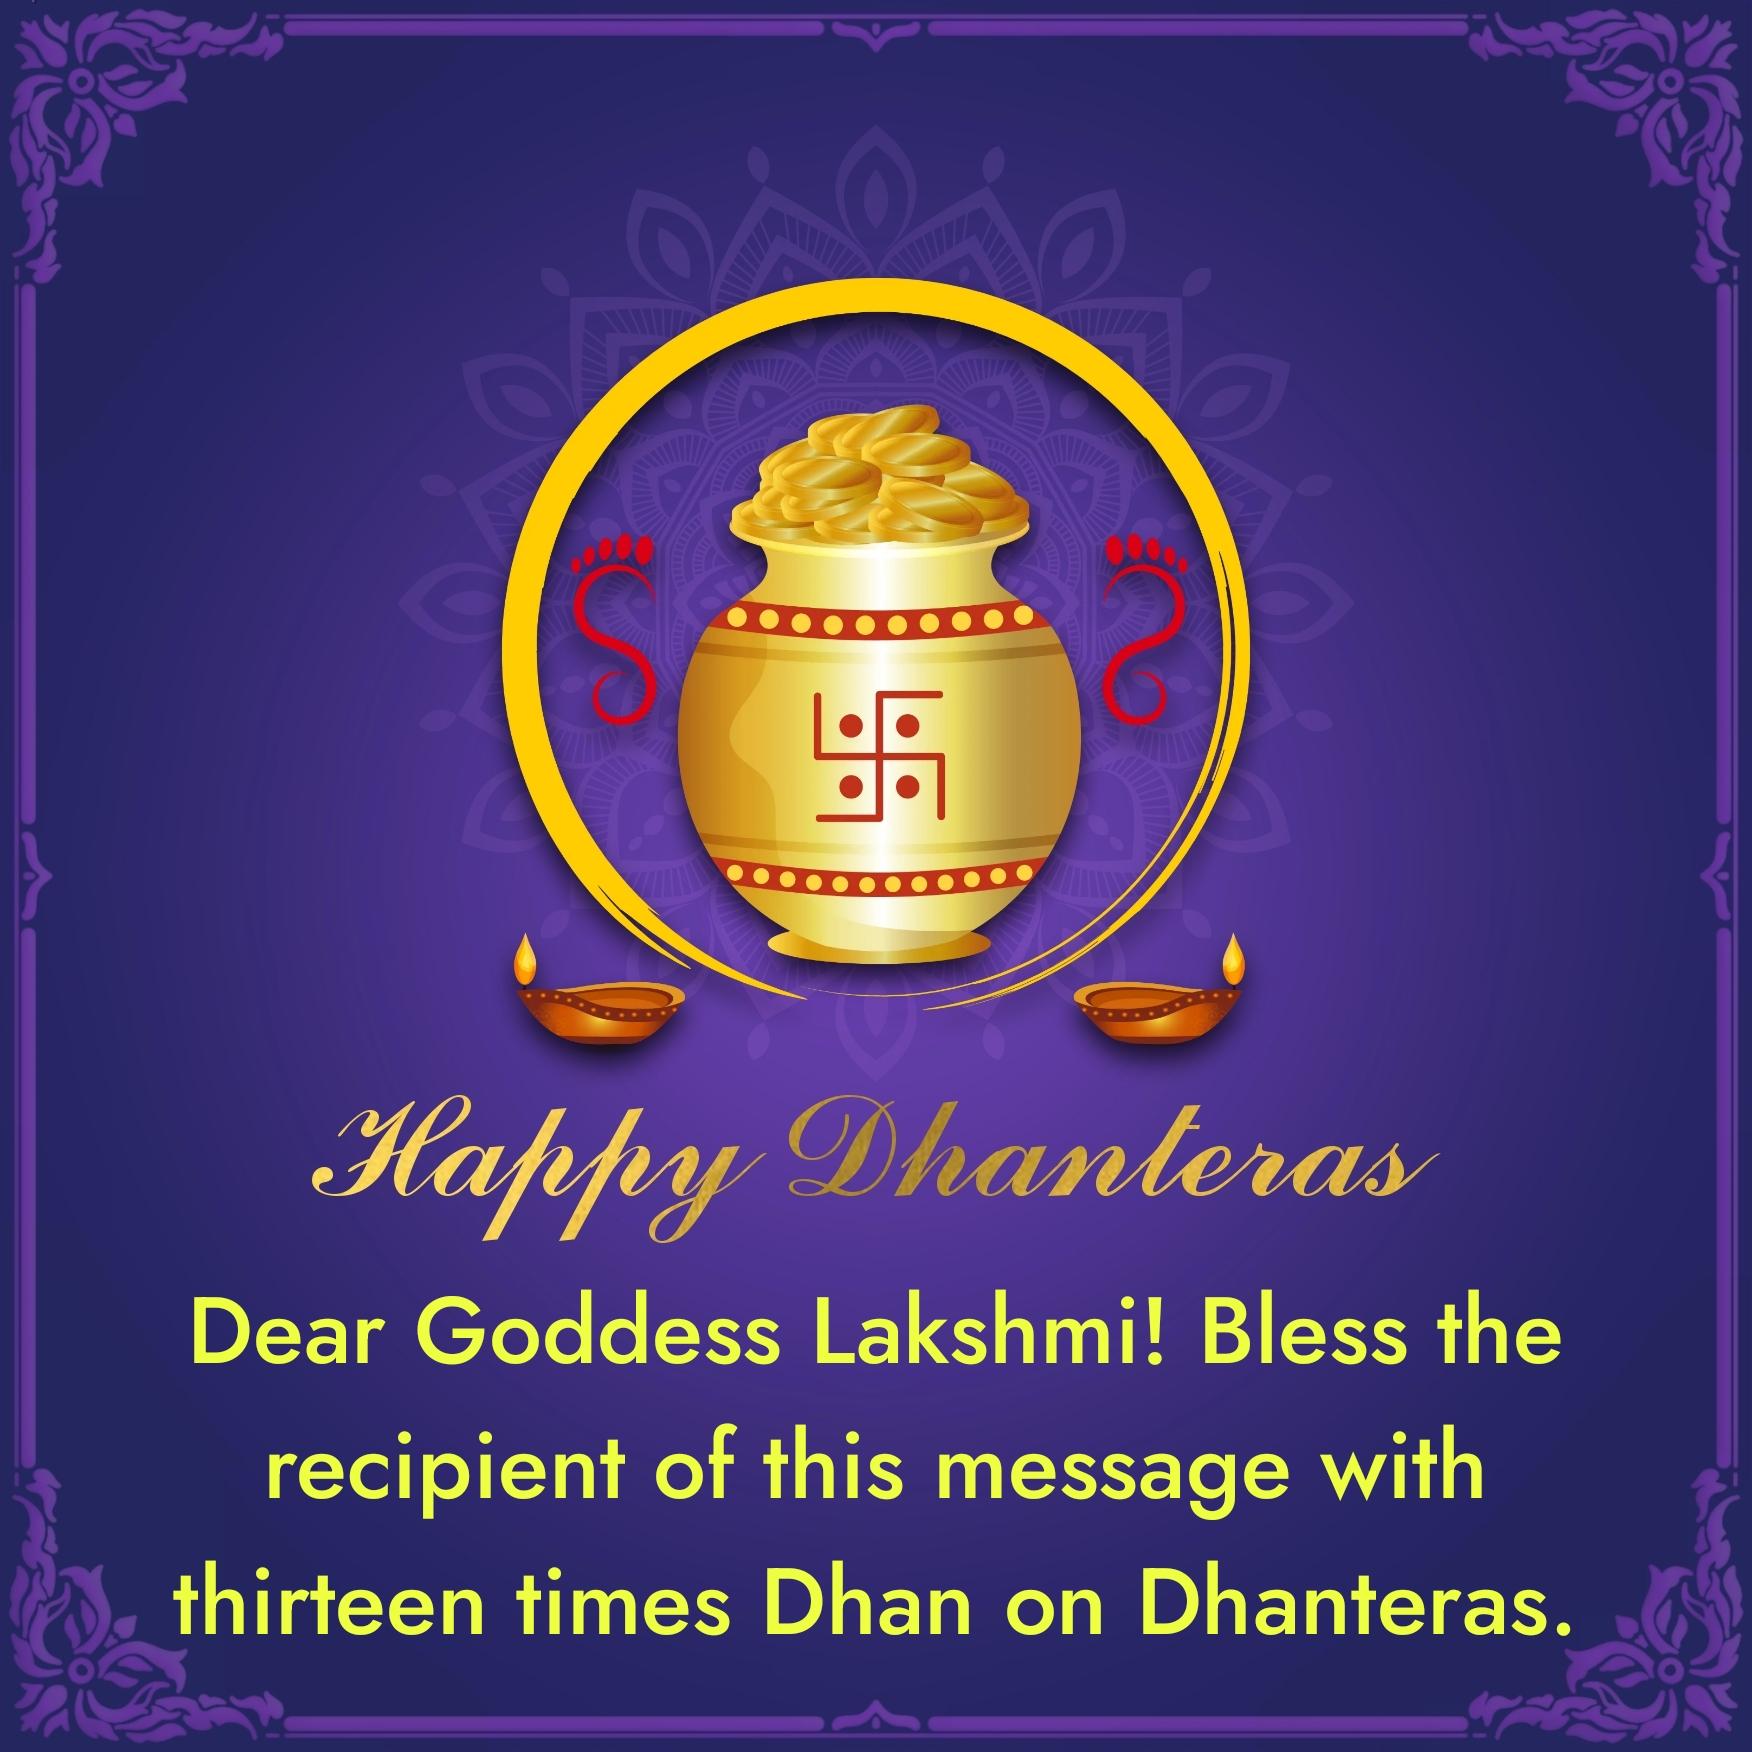 Dear Goddess Lakshmi! Bless the recipient of this message